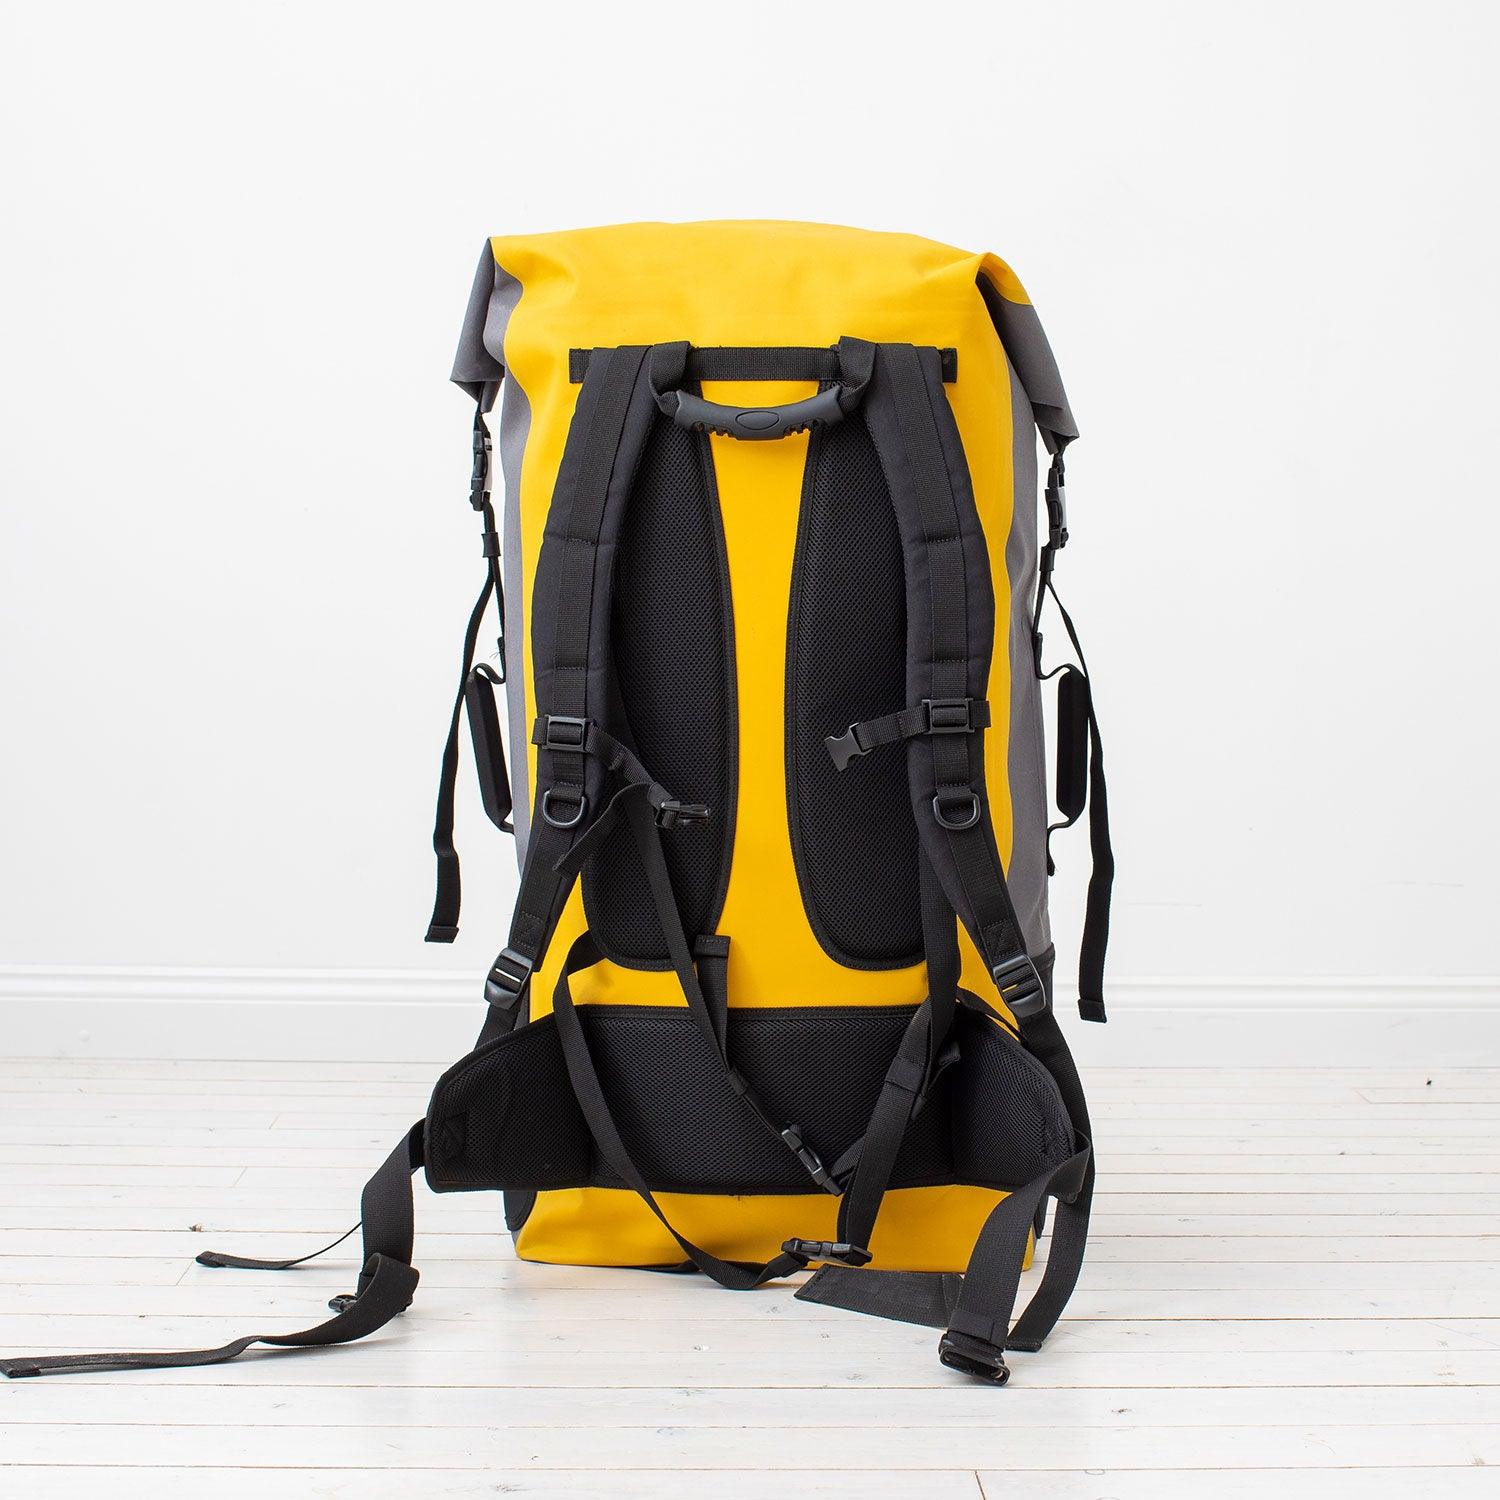 Produktbild von zubehör " Packsack / Dry Bag-zum Ultra Light iSUP " der Marke Lite Venture für 99.95 €. Erhältlich online bei Lite Venture ( www.liteventure.de )